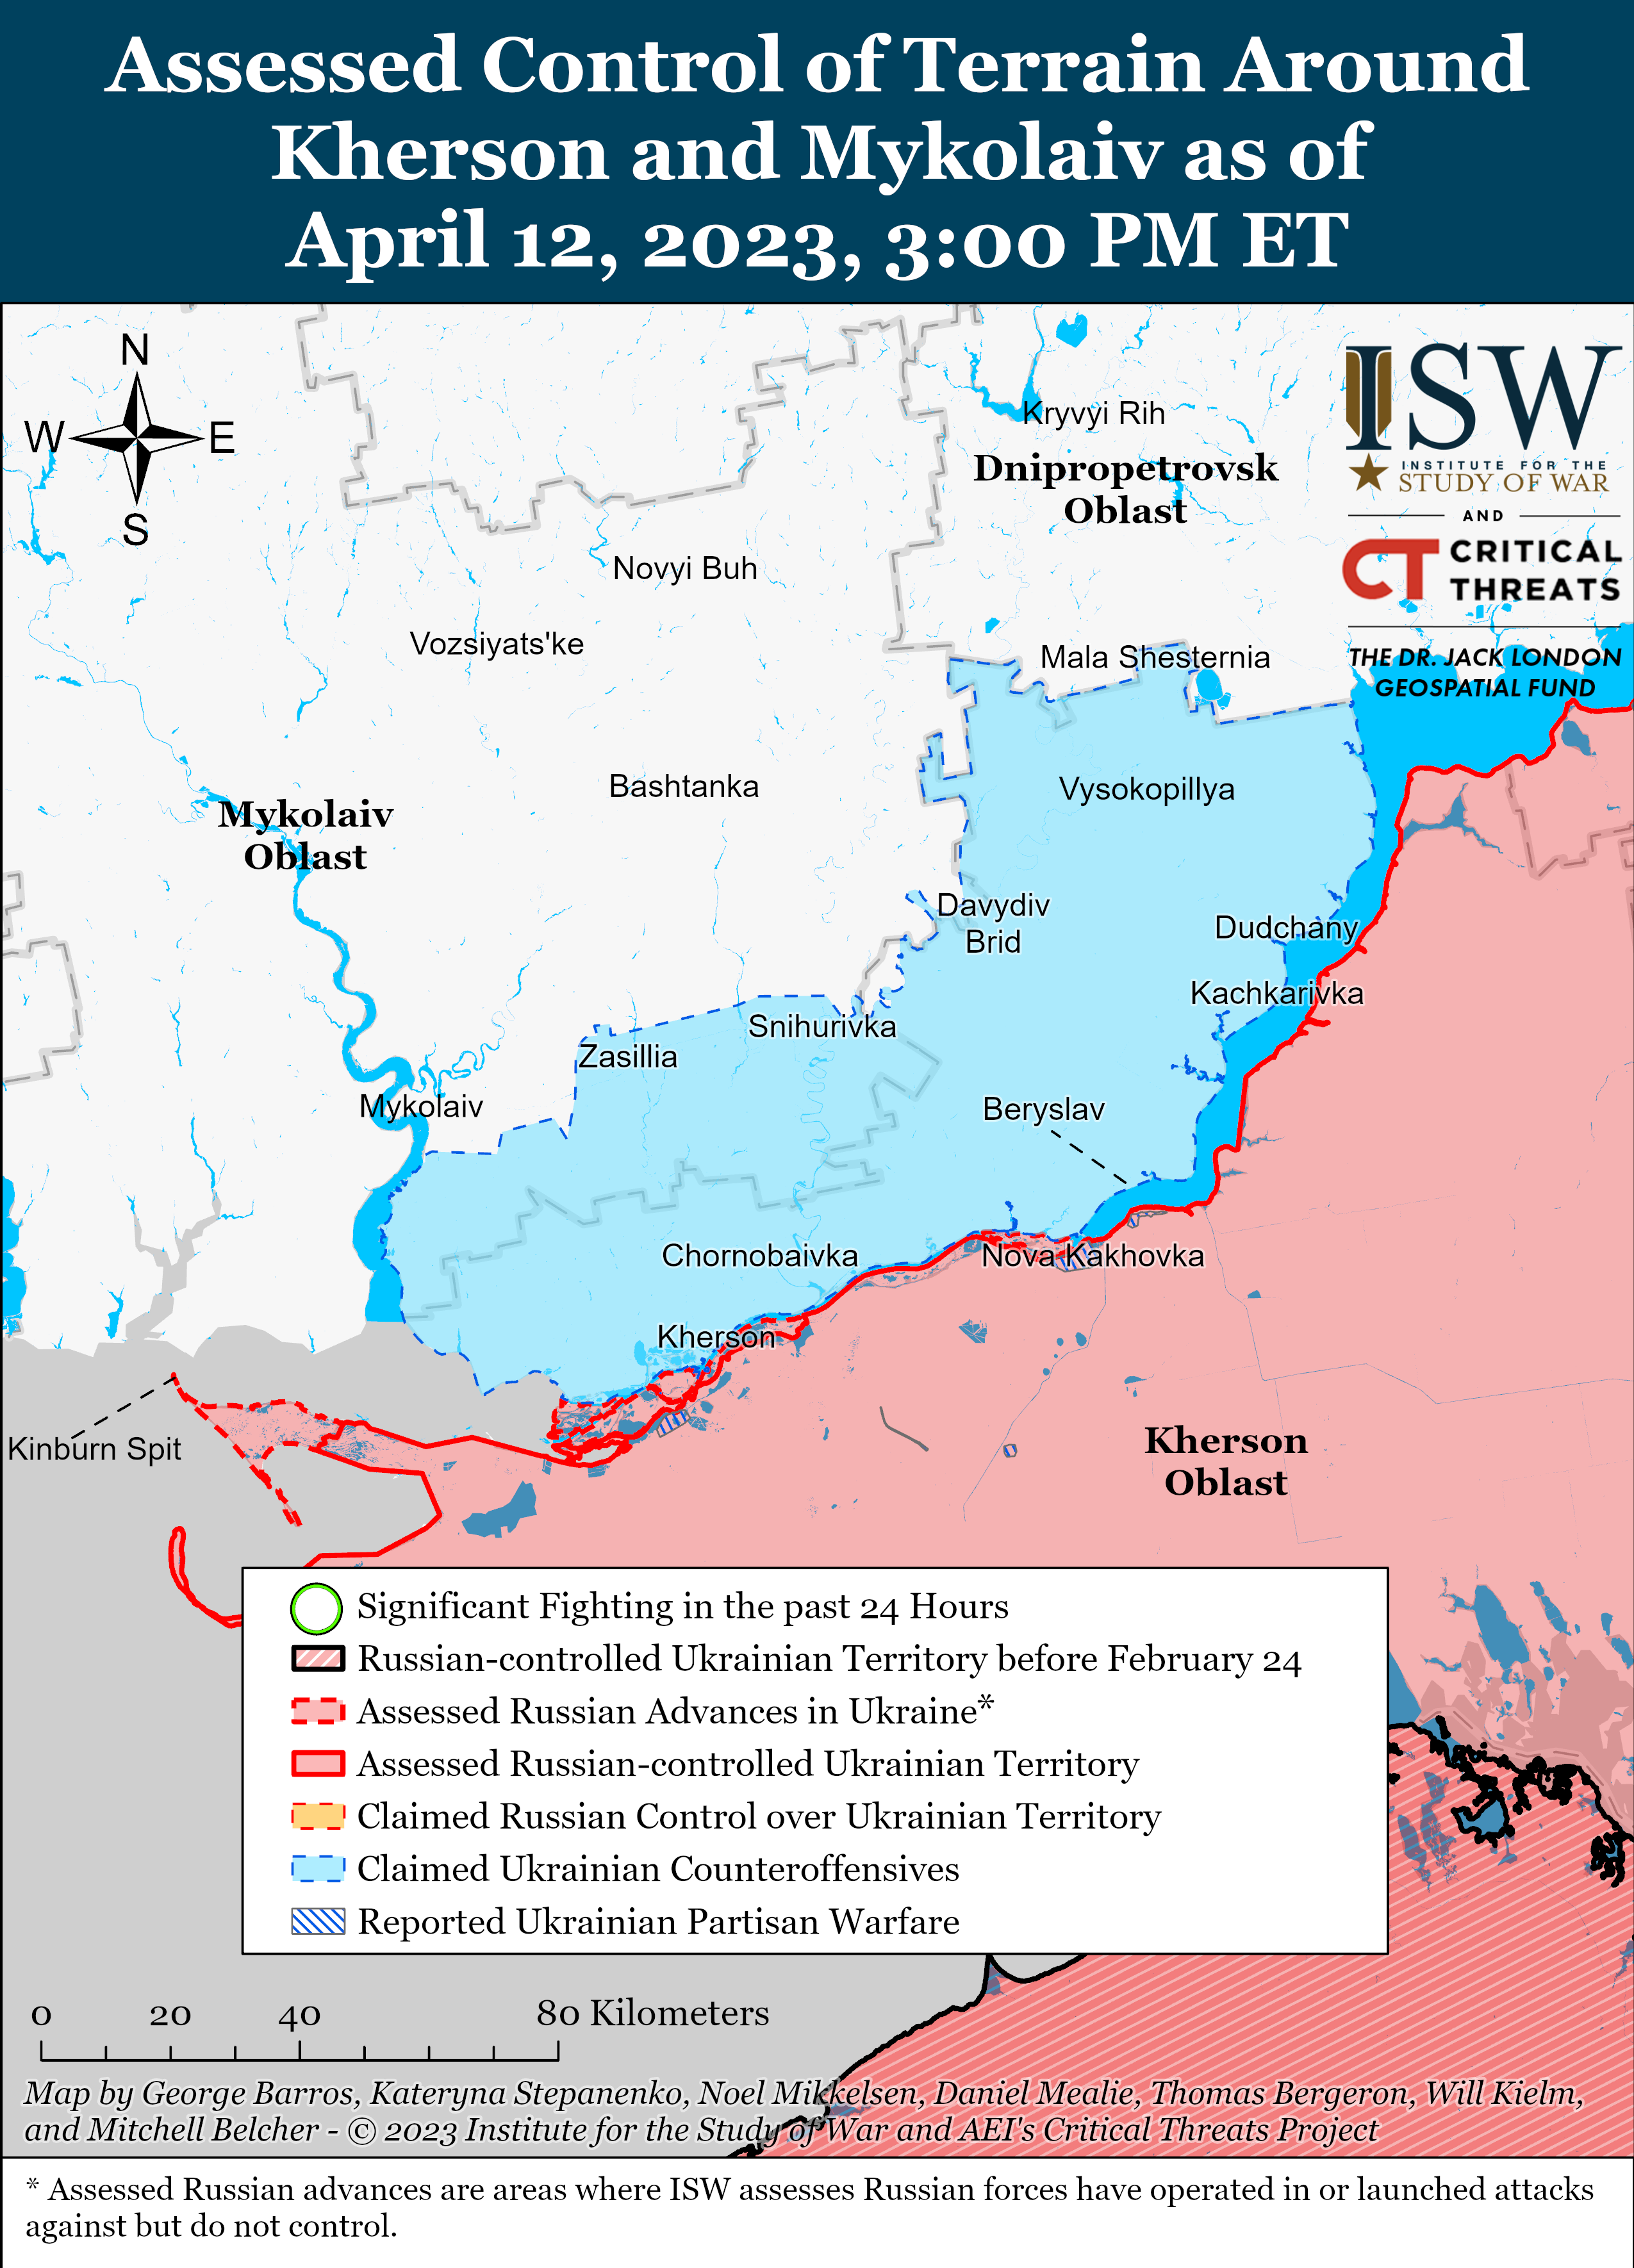 Росіяни вибудували три рівні оборони в Запорізькій області: карти боїв від ISW